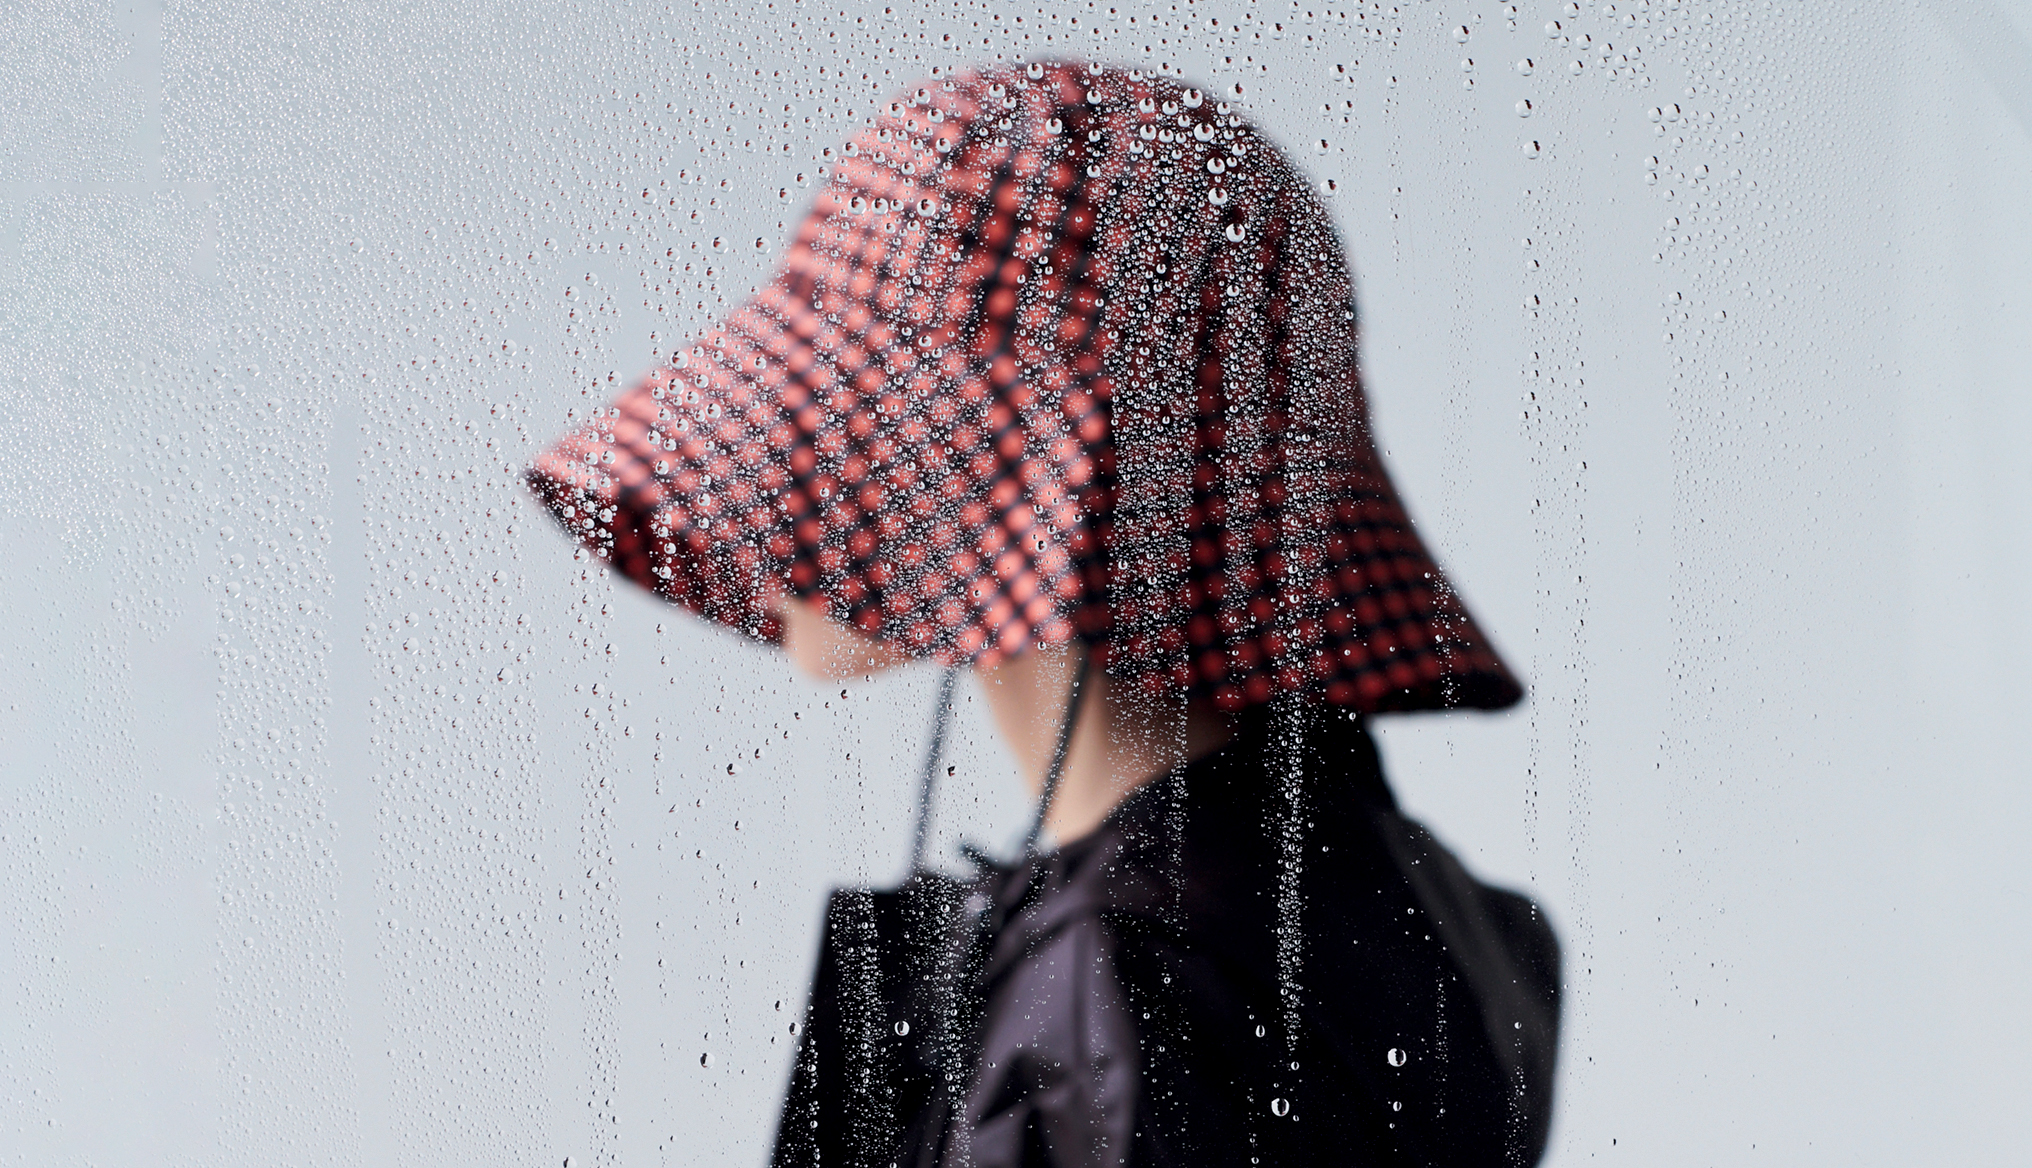 Ess, eső, ess! Élvezd a kedvenc esőkabátodban a zivatart - Glamour